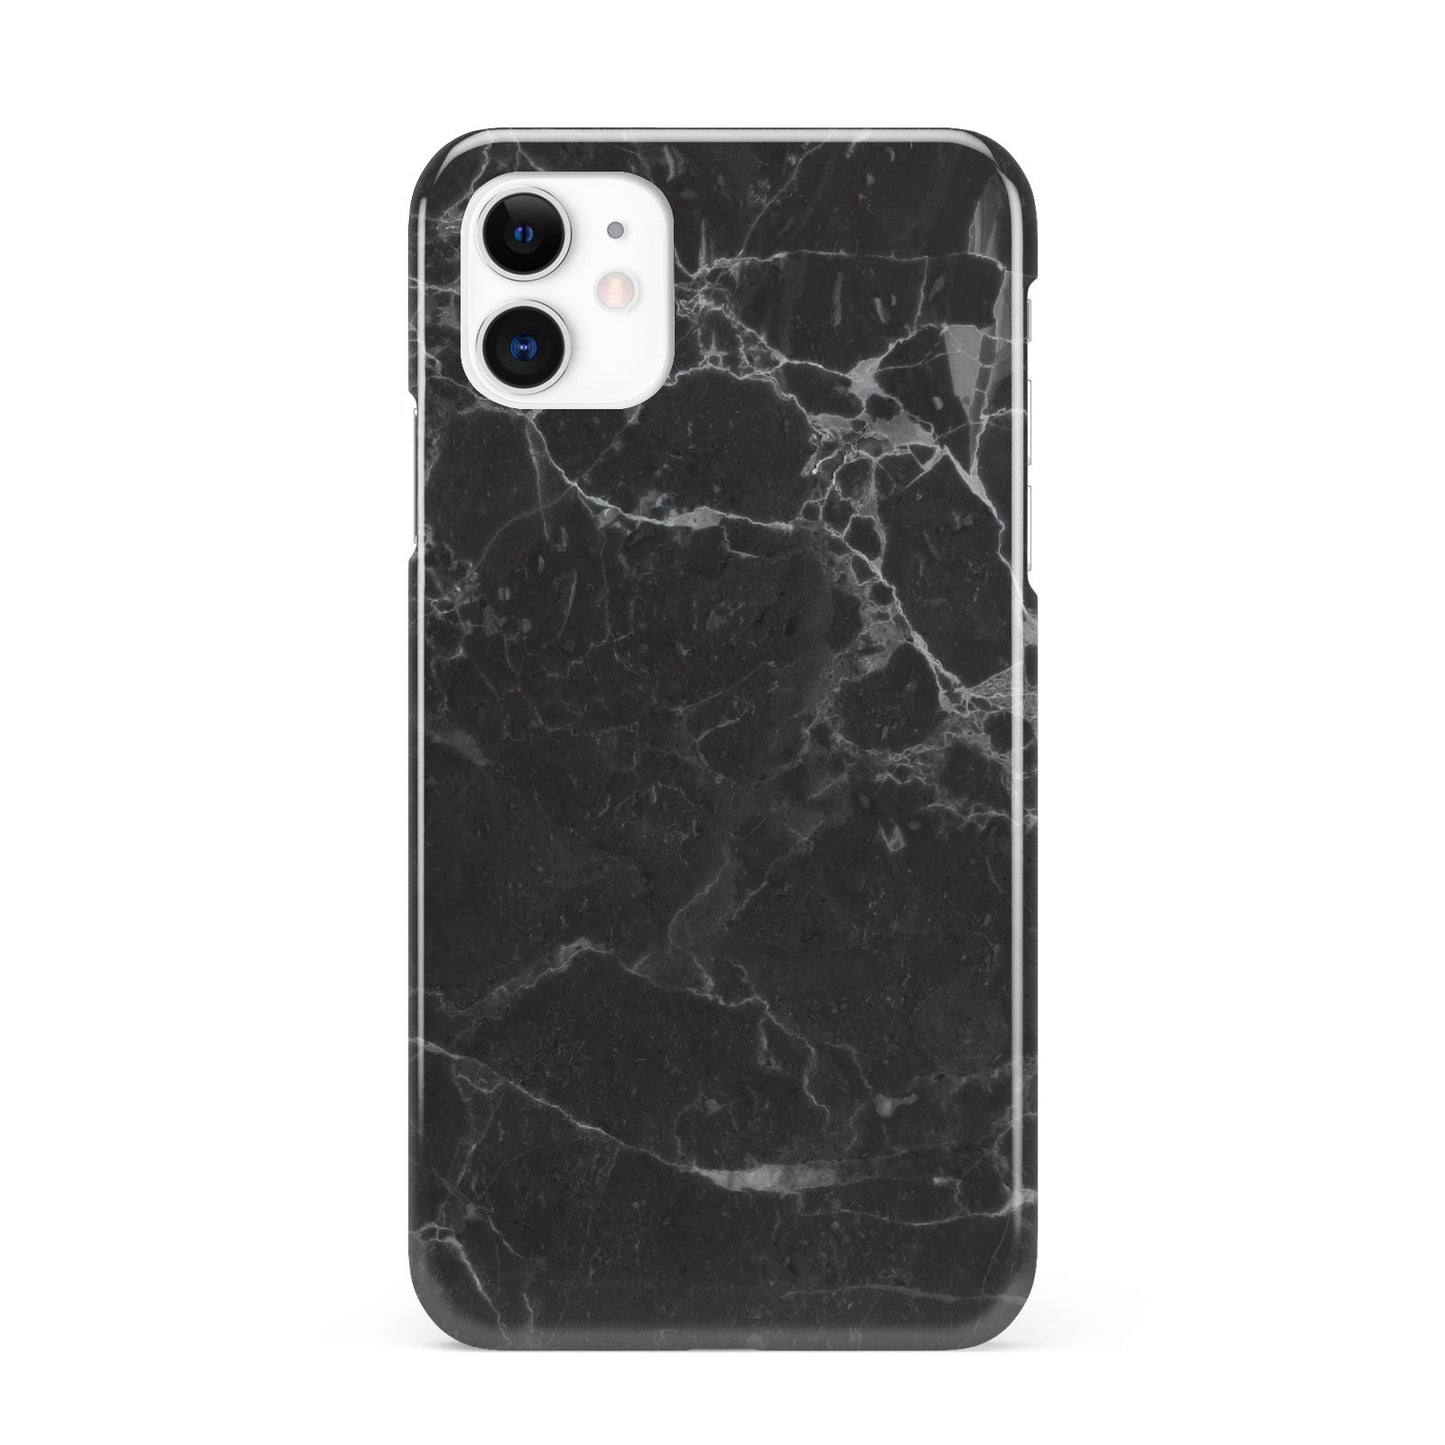 Faux Marble Effect Black iPhone 11 3D Snap Case